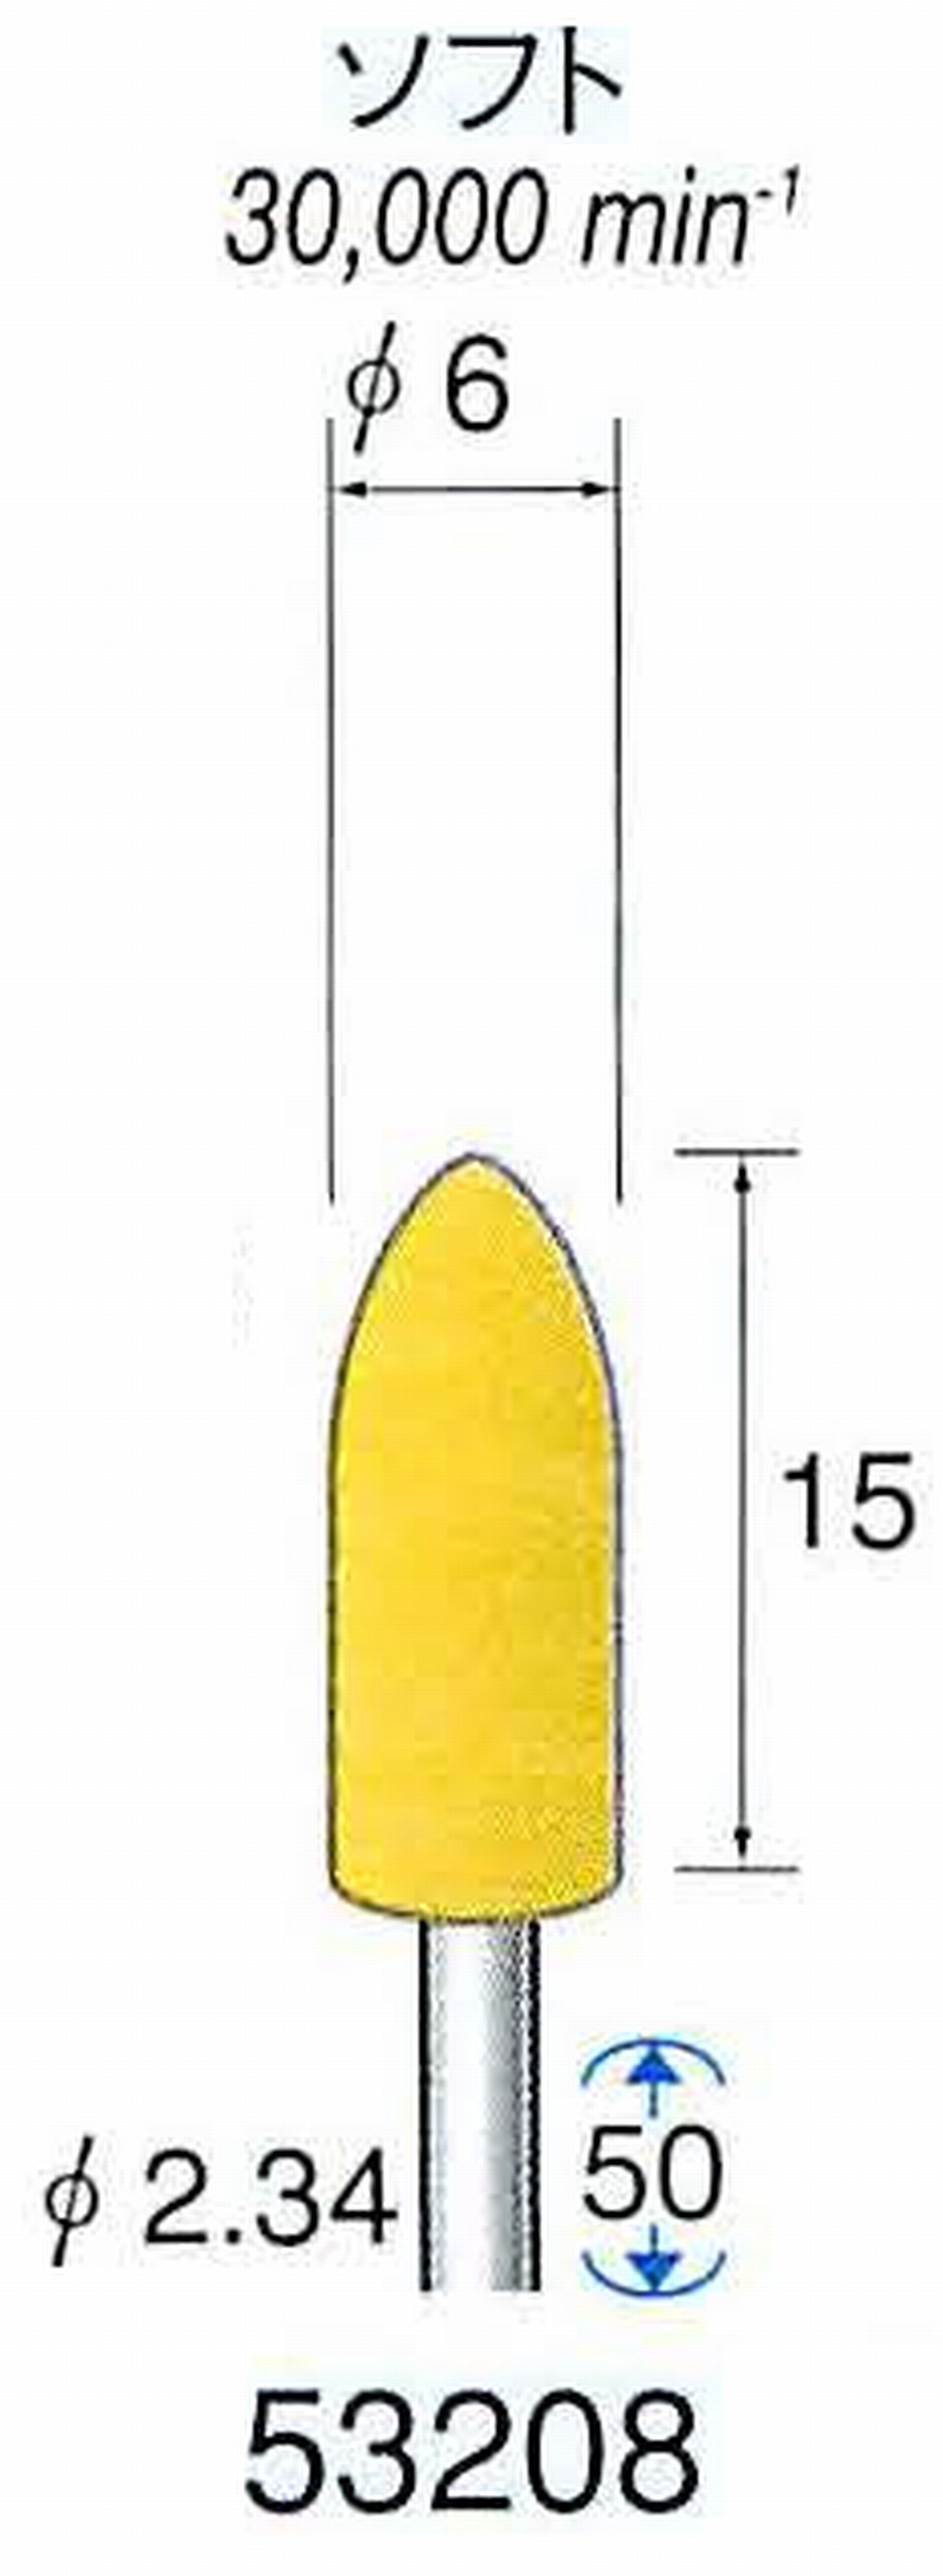 ナカニシ/NAKANISHI イエローフェルトバフ ソフト(研磨材入り) WA(アルミナ)含浸タイプ 軸径(シャンク)φ2.34mm 53208